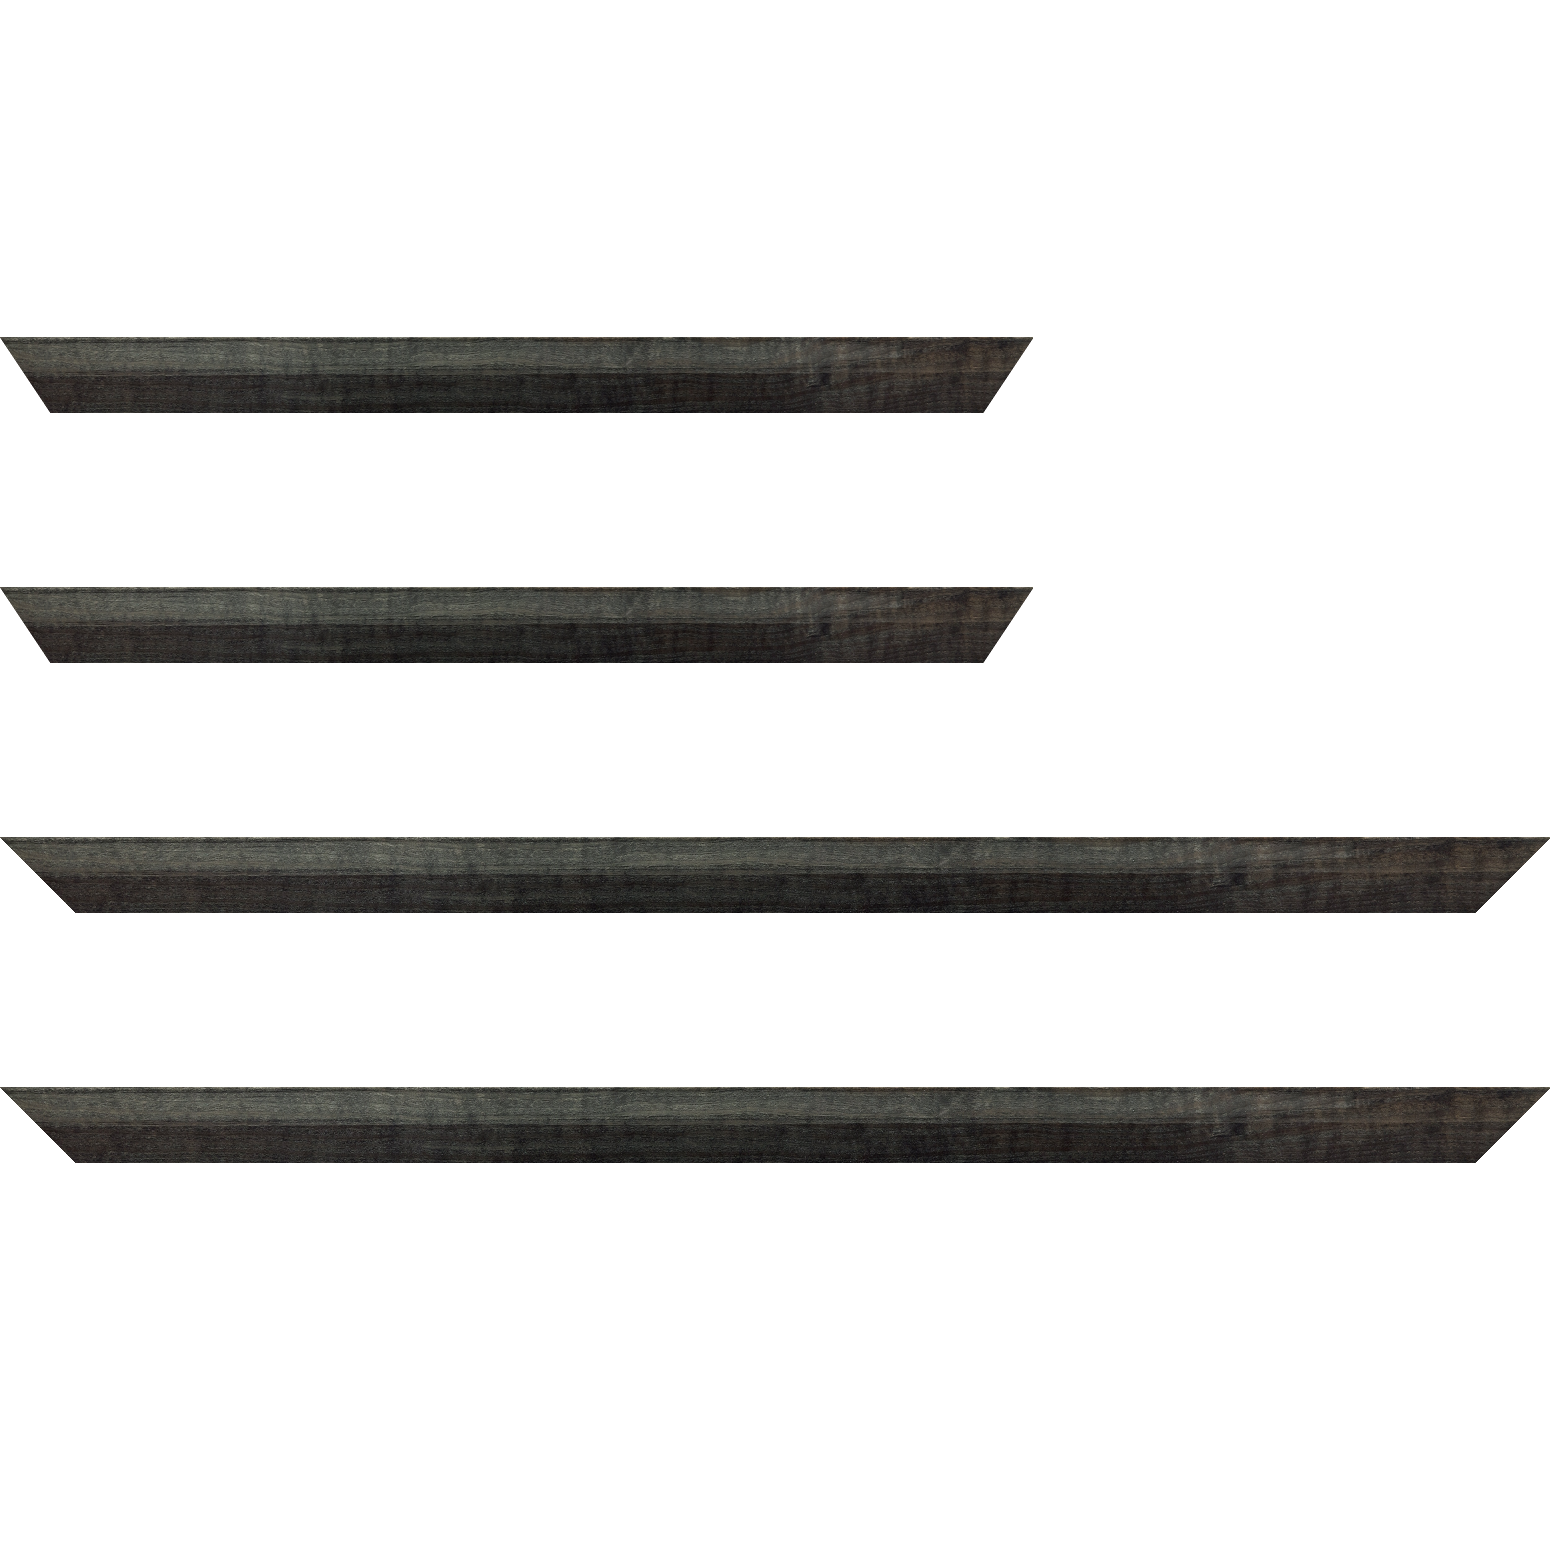 Baguette bois profil arrondi en pente plongeant largeur 2.4cm couleur  gris foncé anthracite finition vernis brillant,veine du bois  apparent (pin) , - 35x24